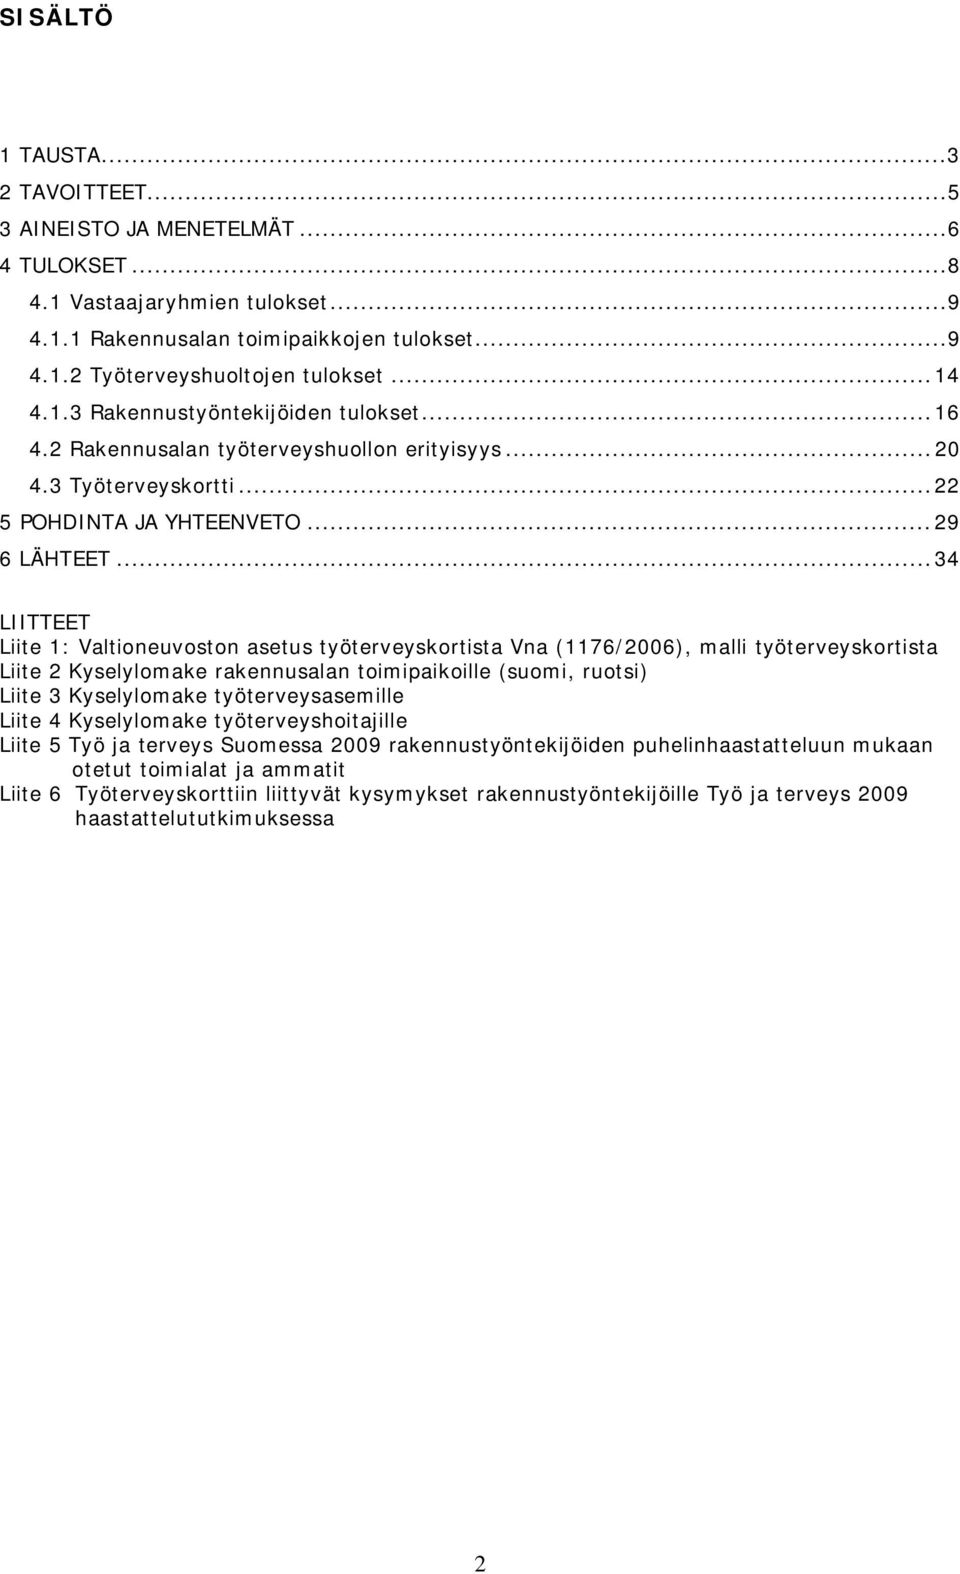 ..34 LIITTEET Liite 1: Valtioneuvoston asetus työterveyskortista Vna (1176/2006), malli työterveyskortista Liite 2 Kyselylomake rakennusalan toimipaikoille (suomi, ruotsi) Liite 3 Kyselylomake